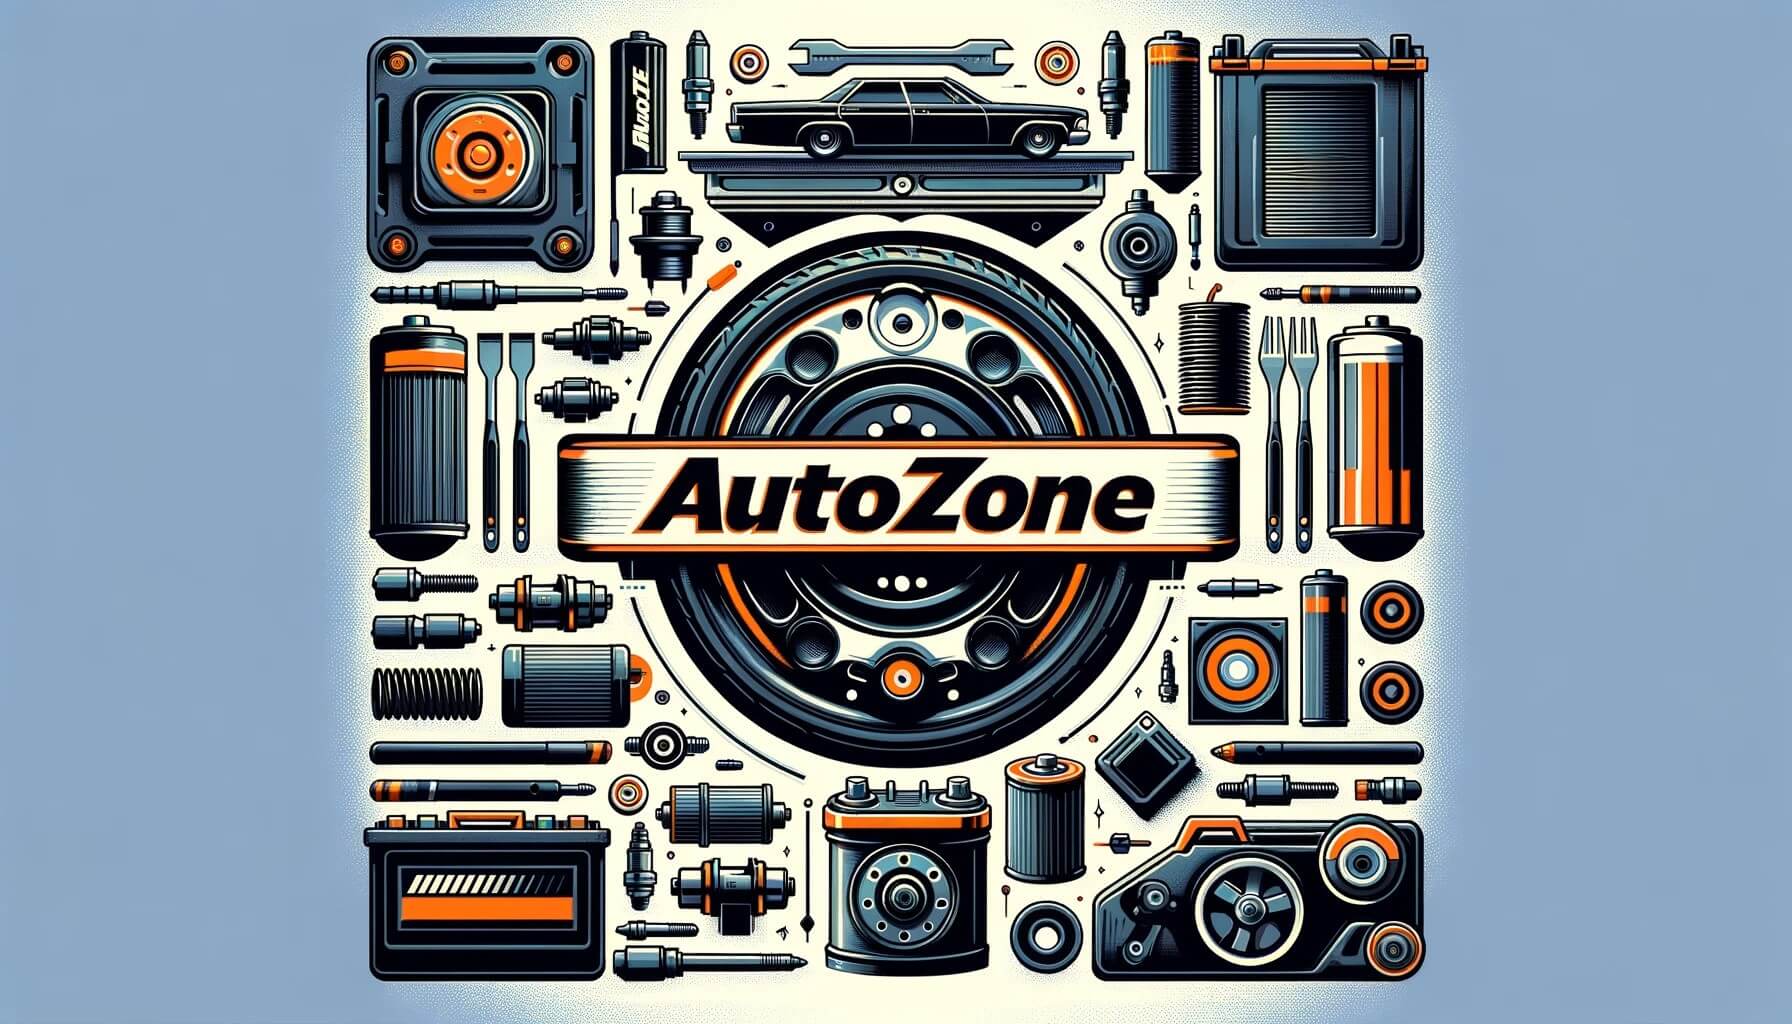 AutoZone.com Online Auto Parts Store